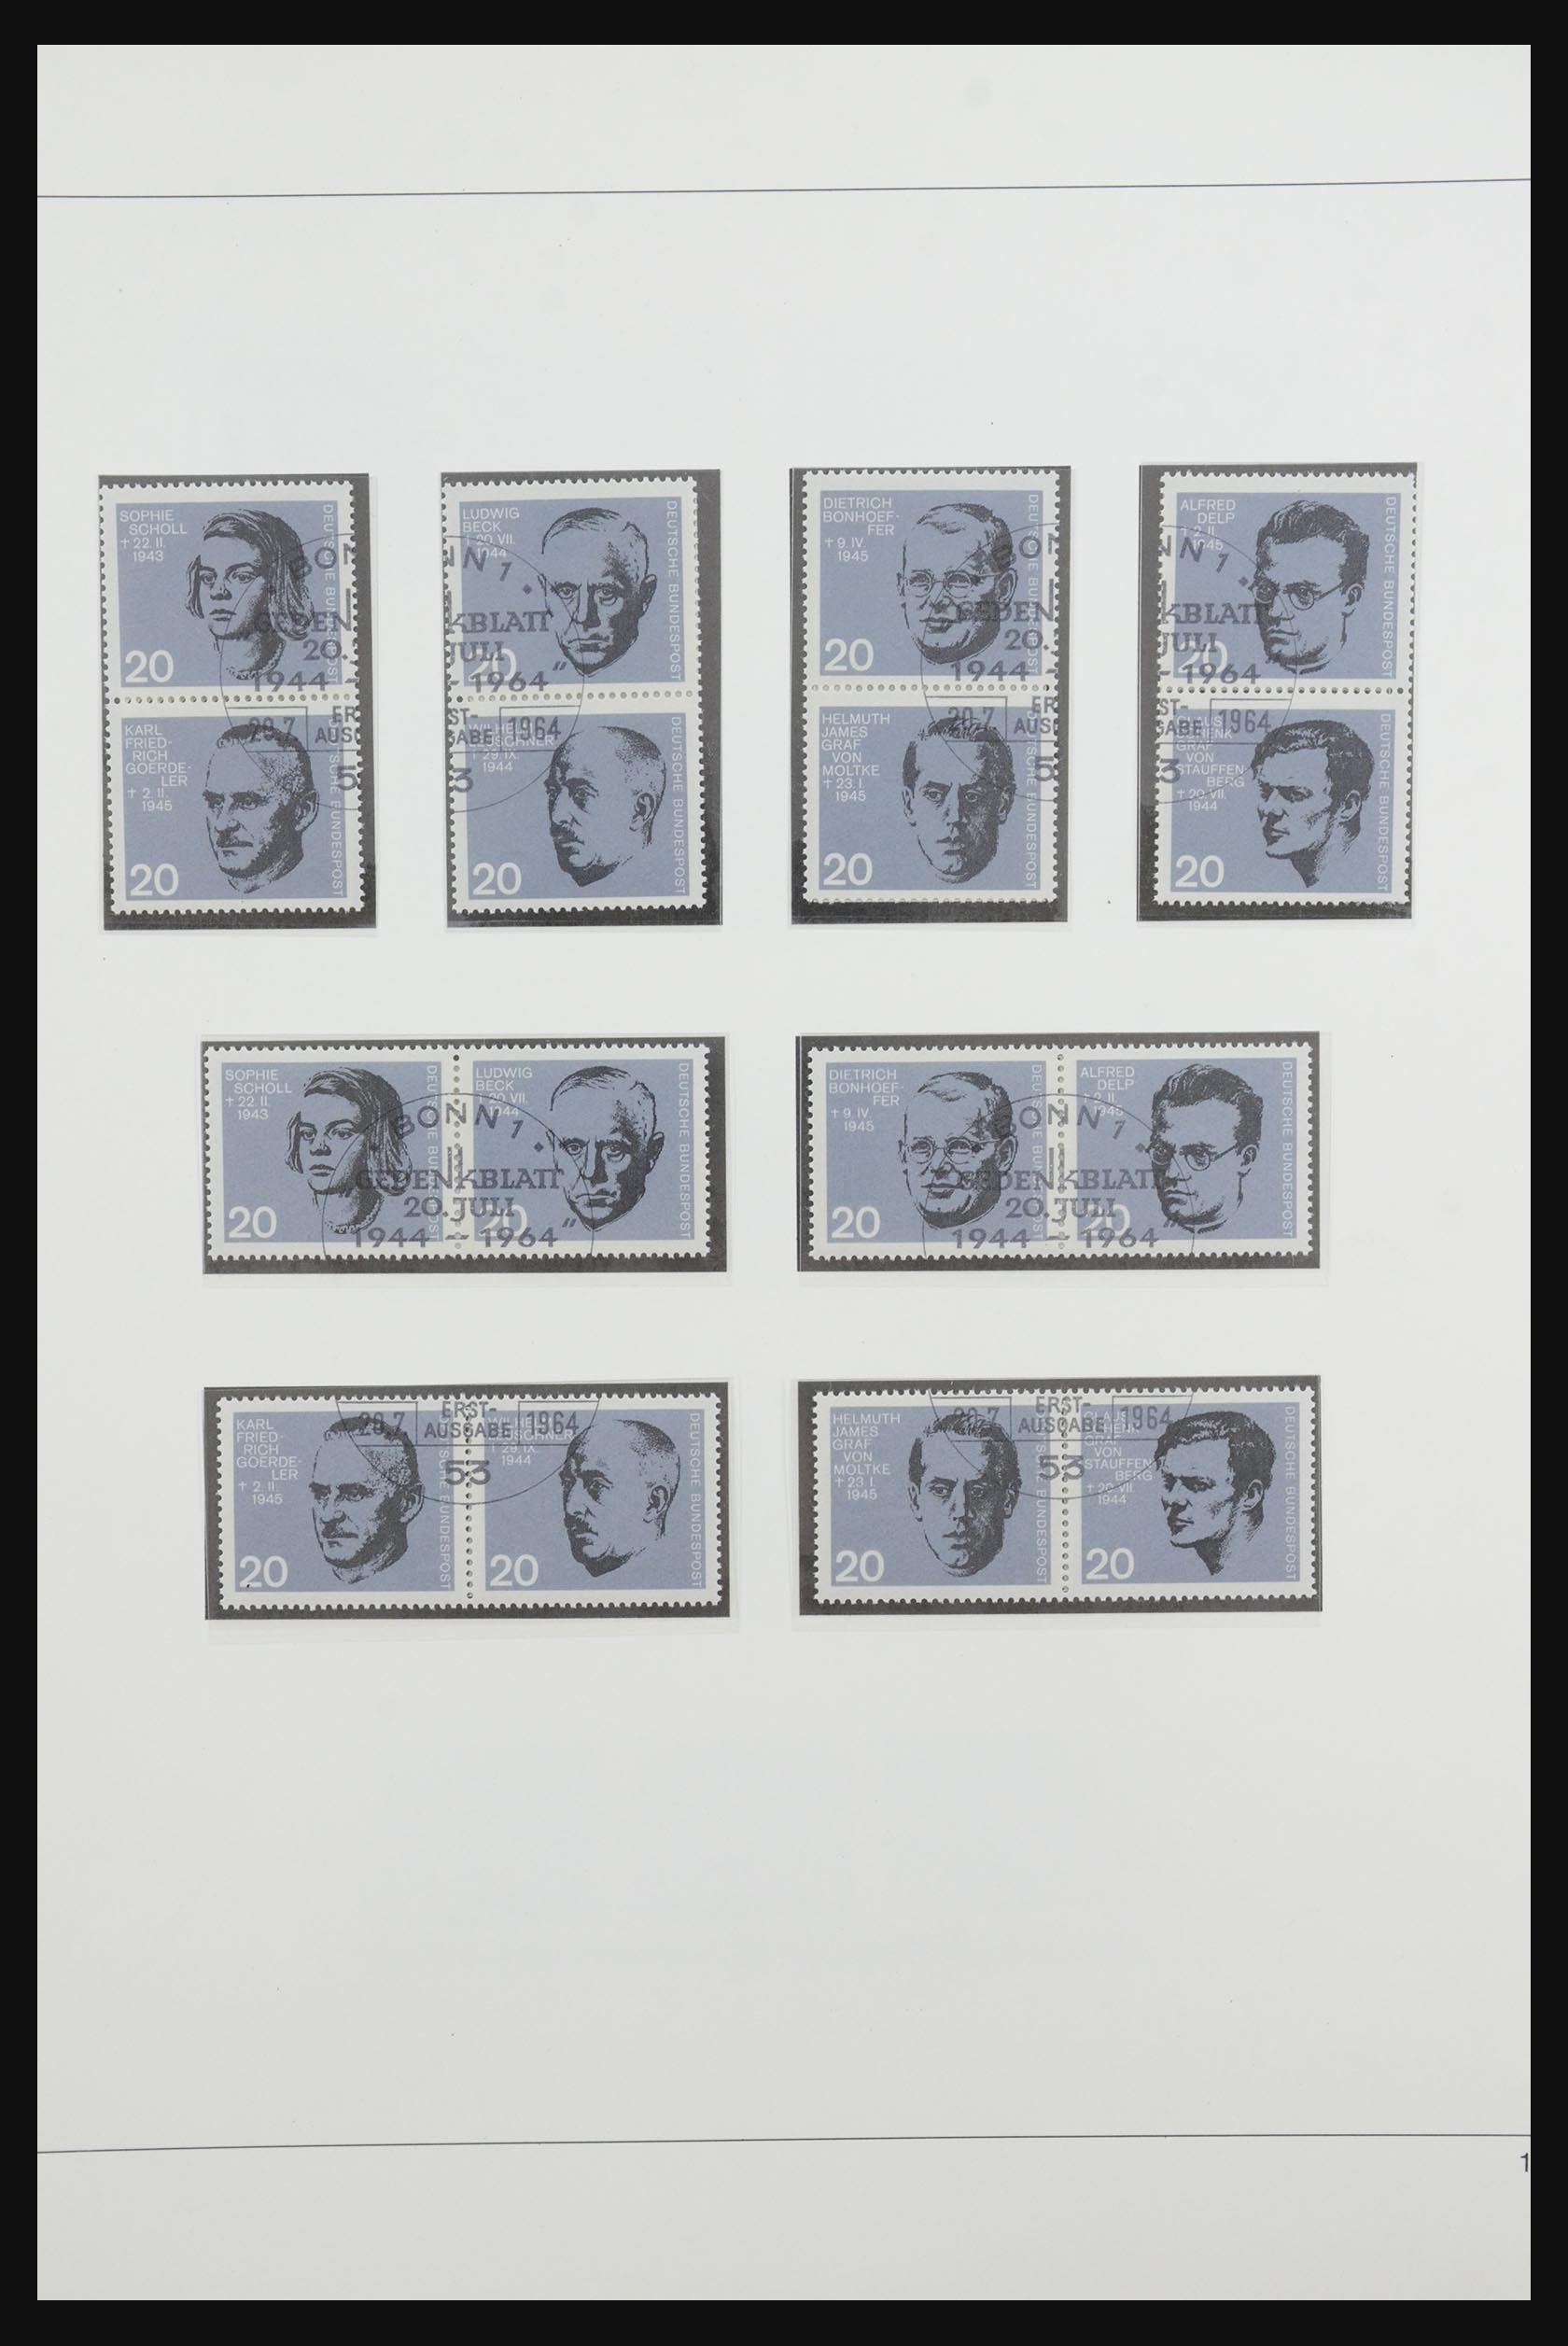 31842 024 - 31842 Bundespost combinaties 1951-2003.